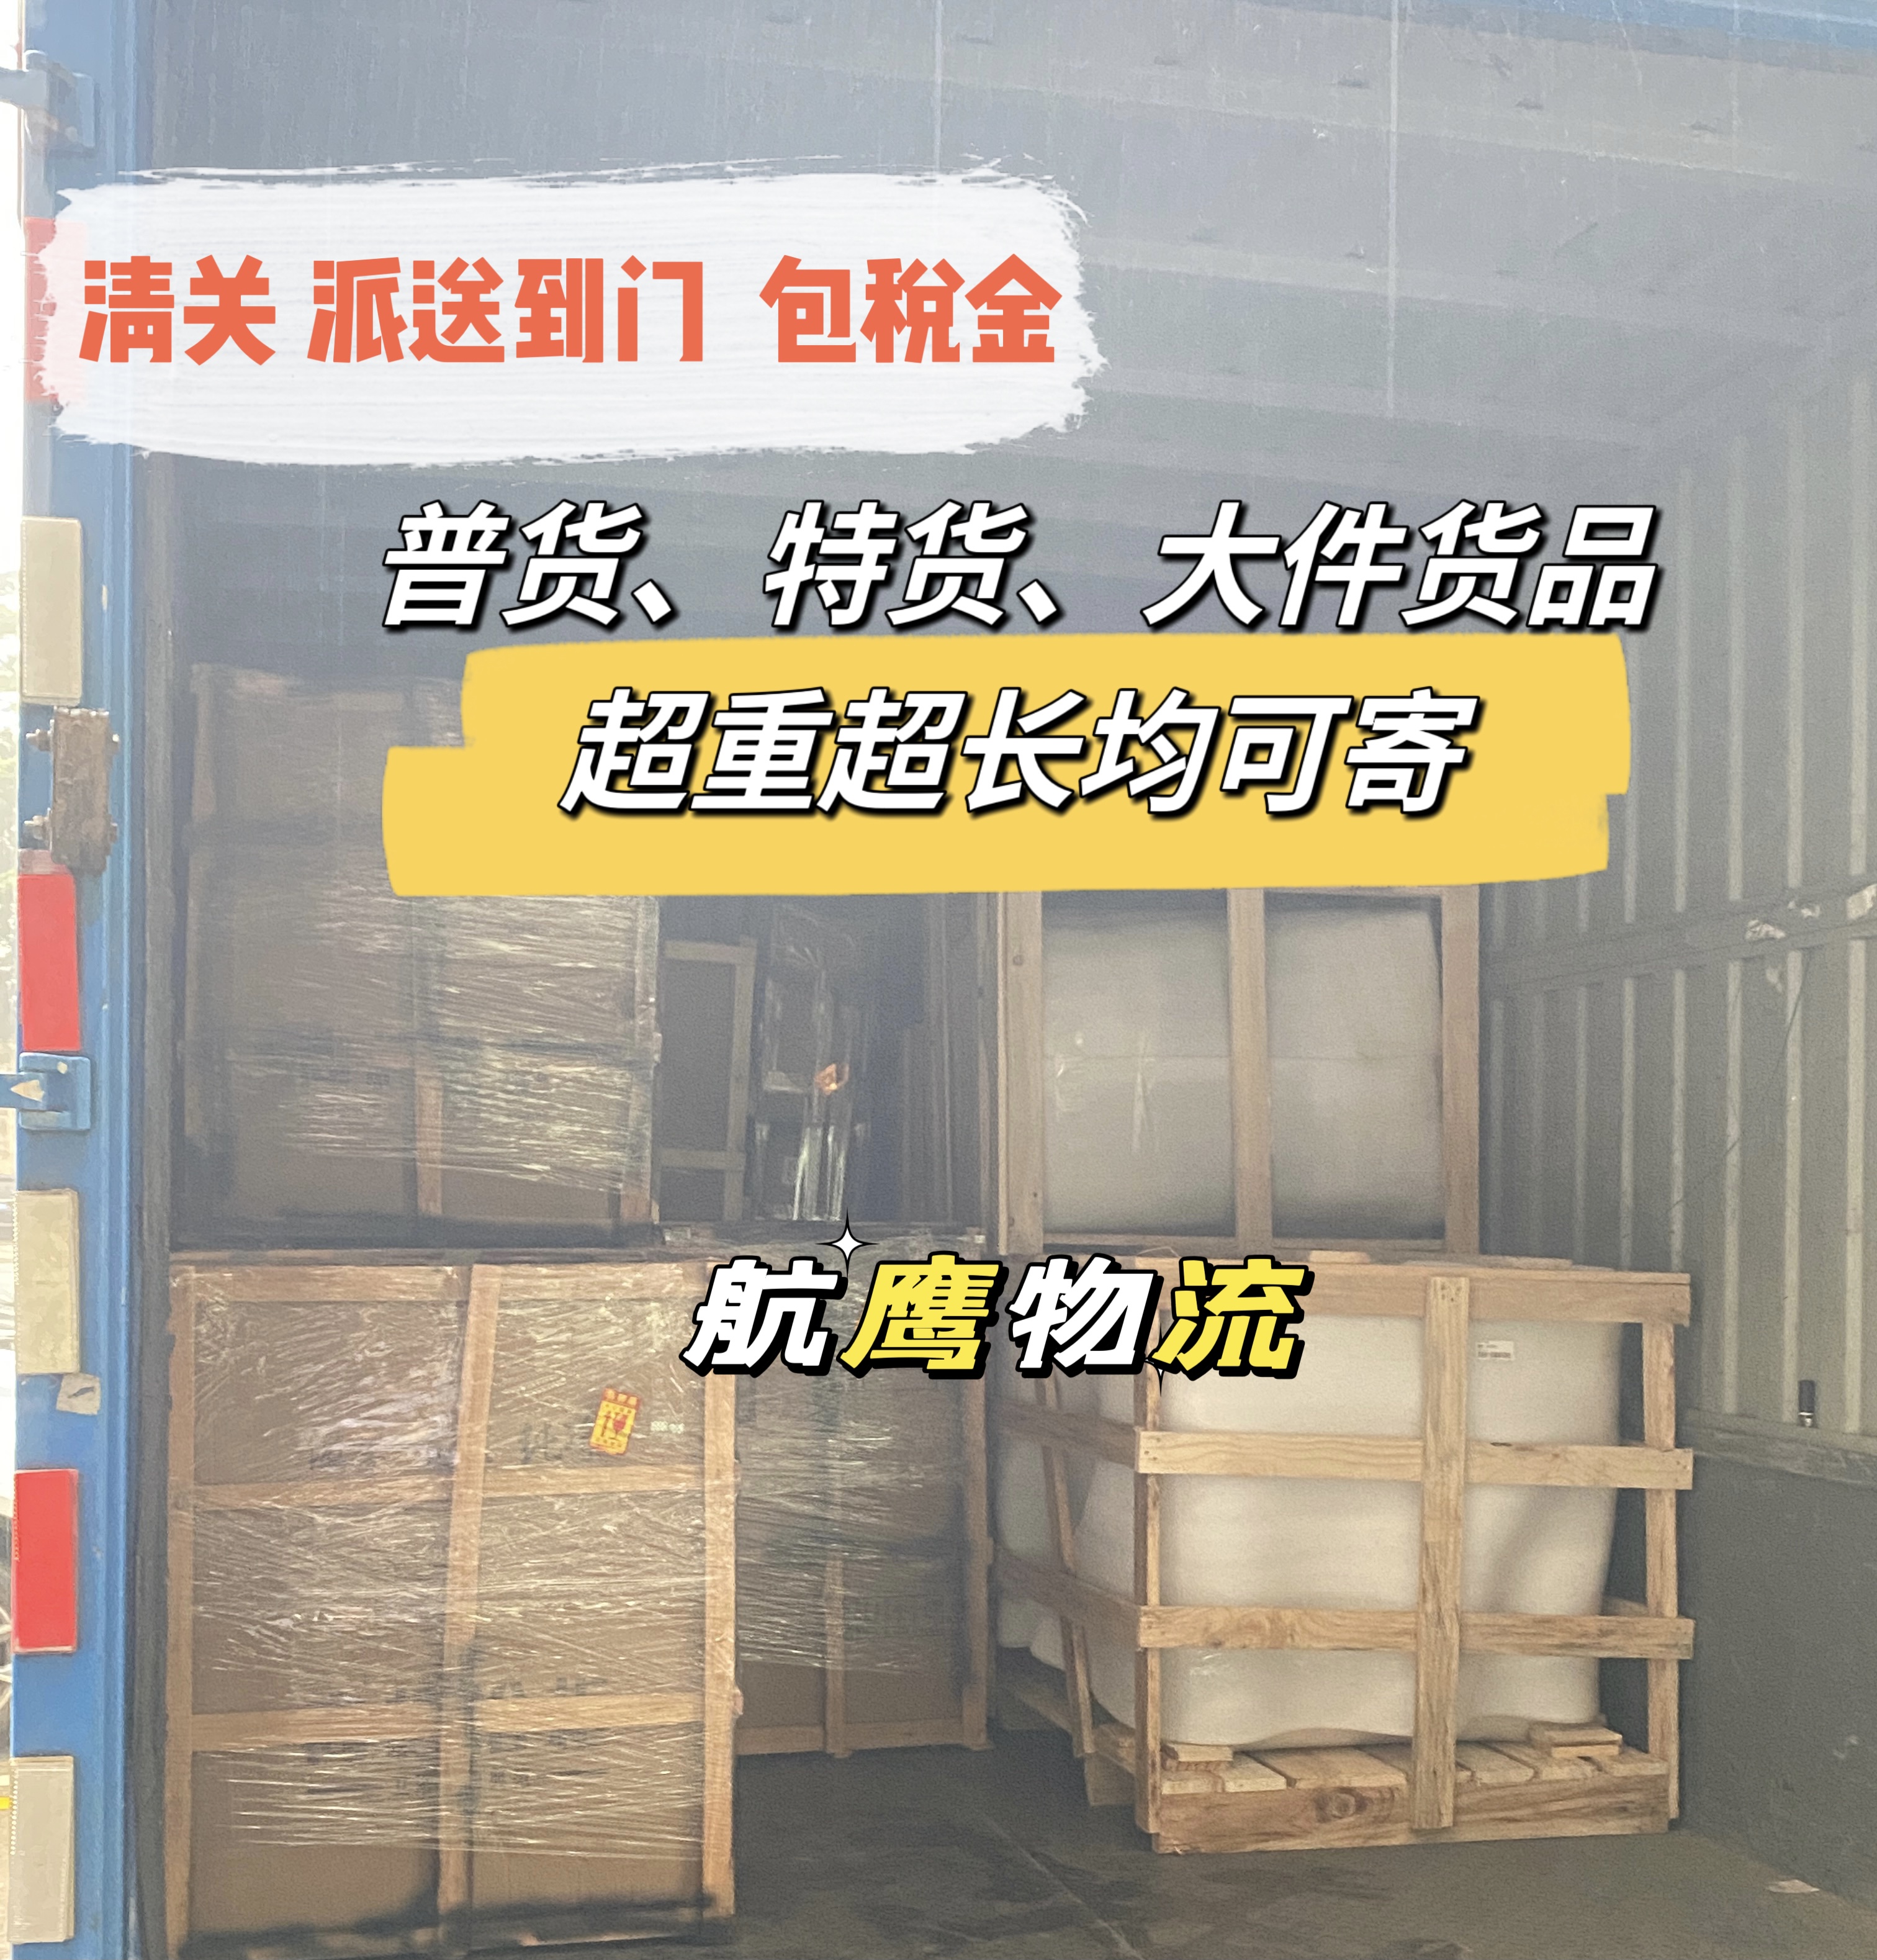 私人行李物品寄台湾_苏州航鹰物流包清关包税到门